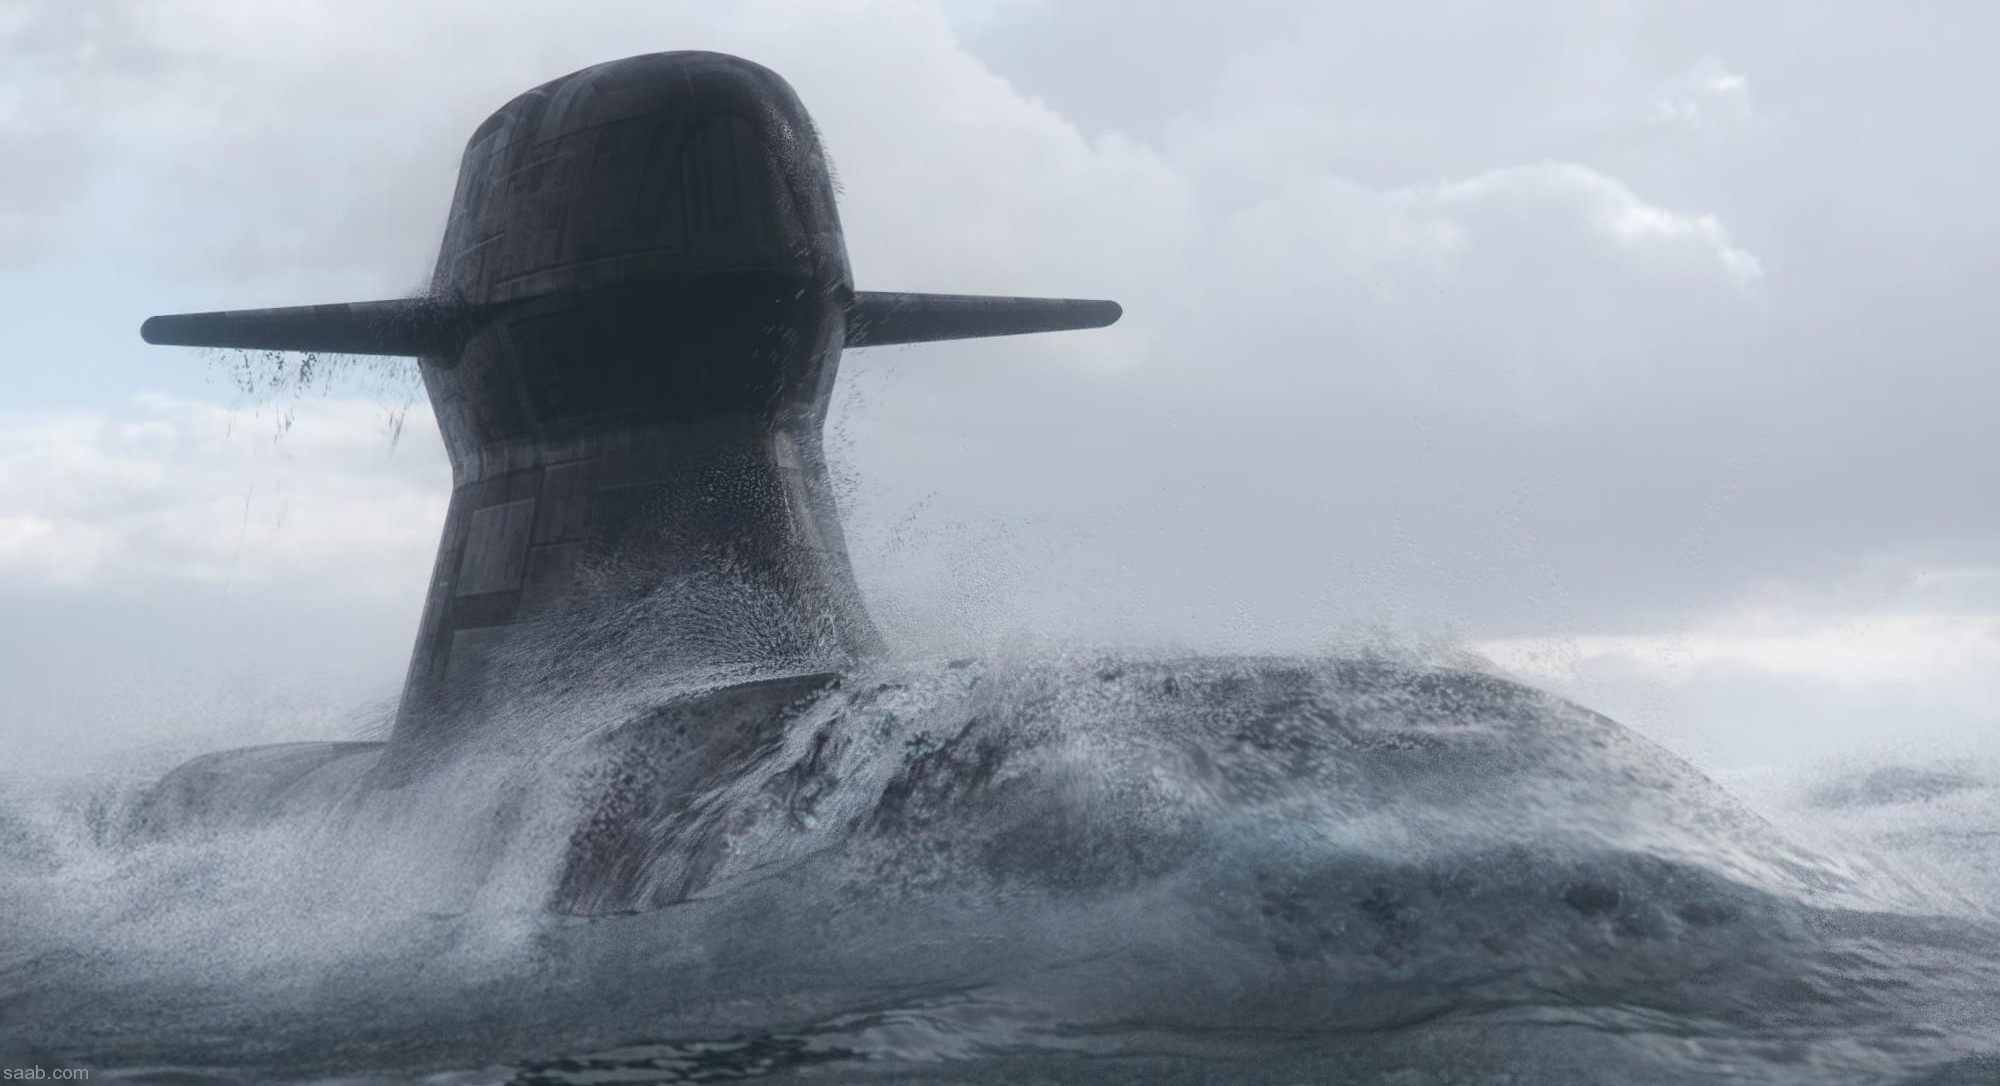 hswms hms blekinge a26 class skane submarine swedish navy svenska marinen försvarsmakten saab kockums 02